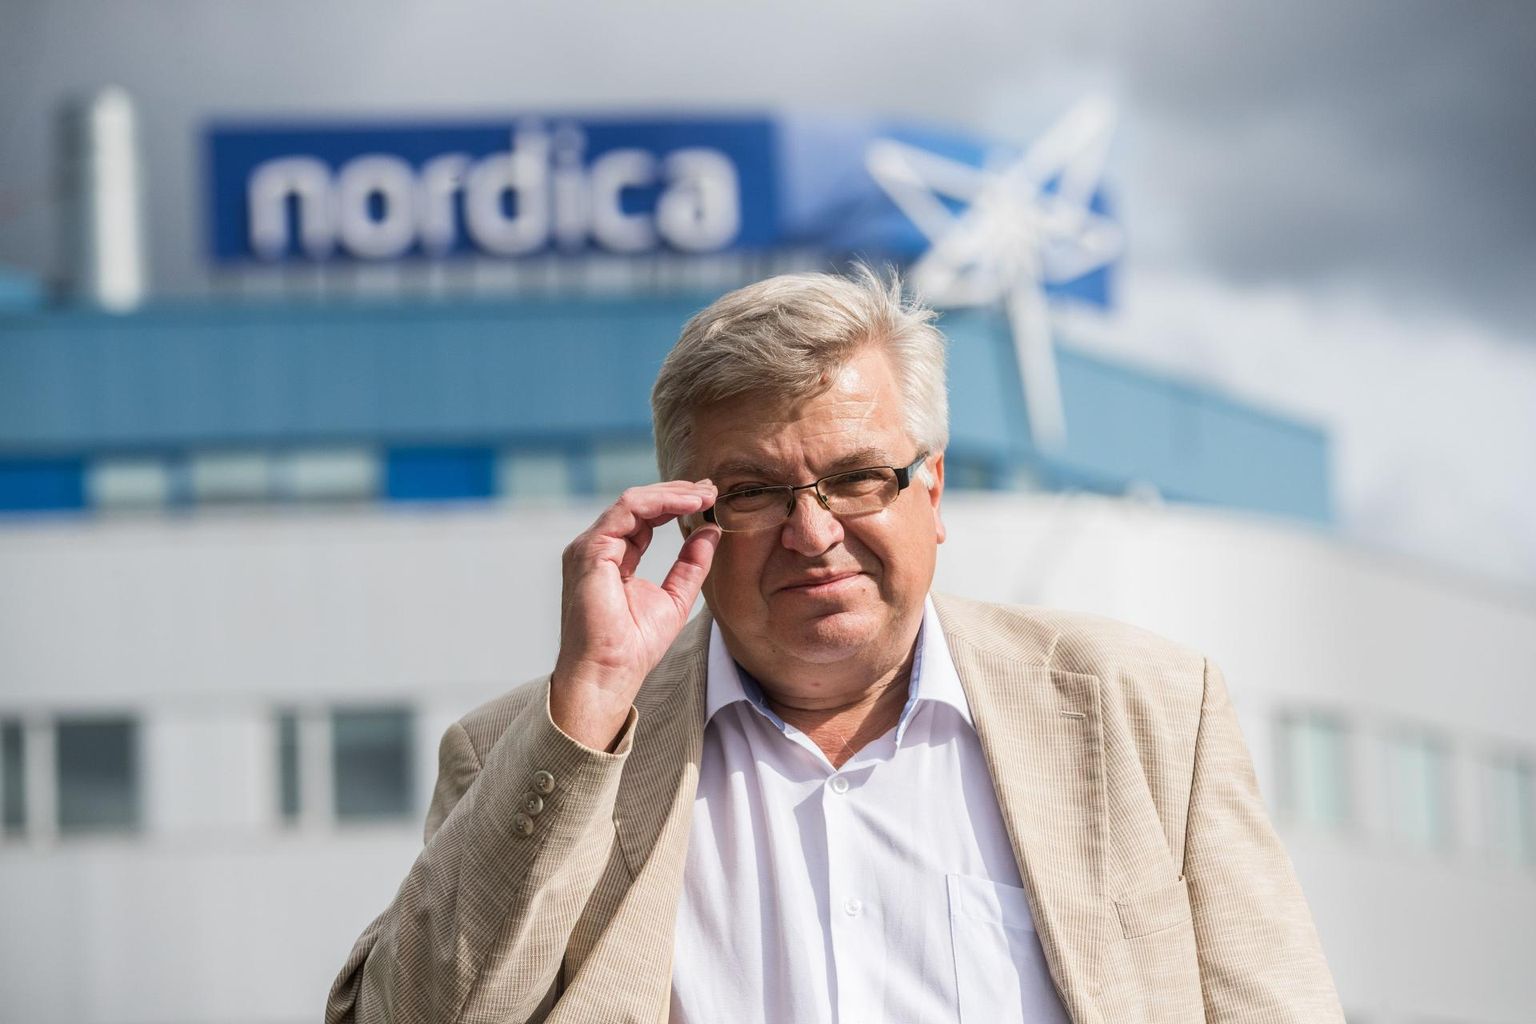 «Me ei taha, et meie konkurendid sellest kuuleks,» jätab Nordica juht Erki Urva uued liini­lennusihtkohad saladuseks.